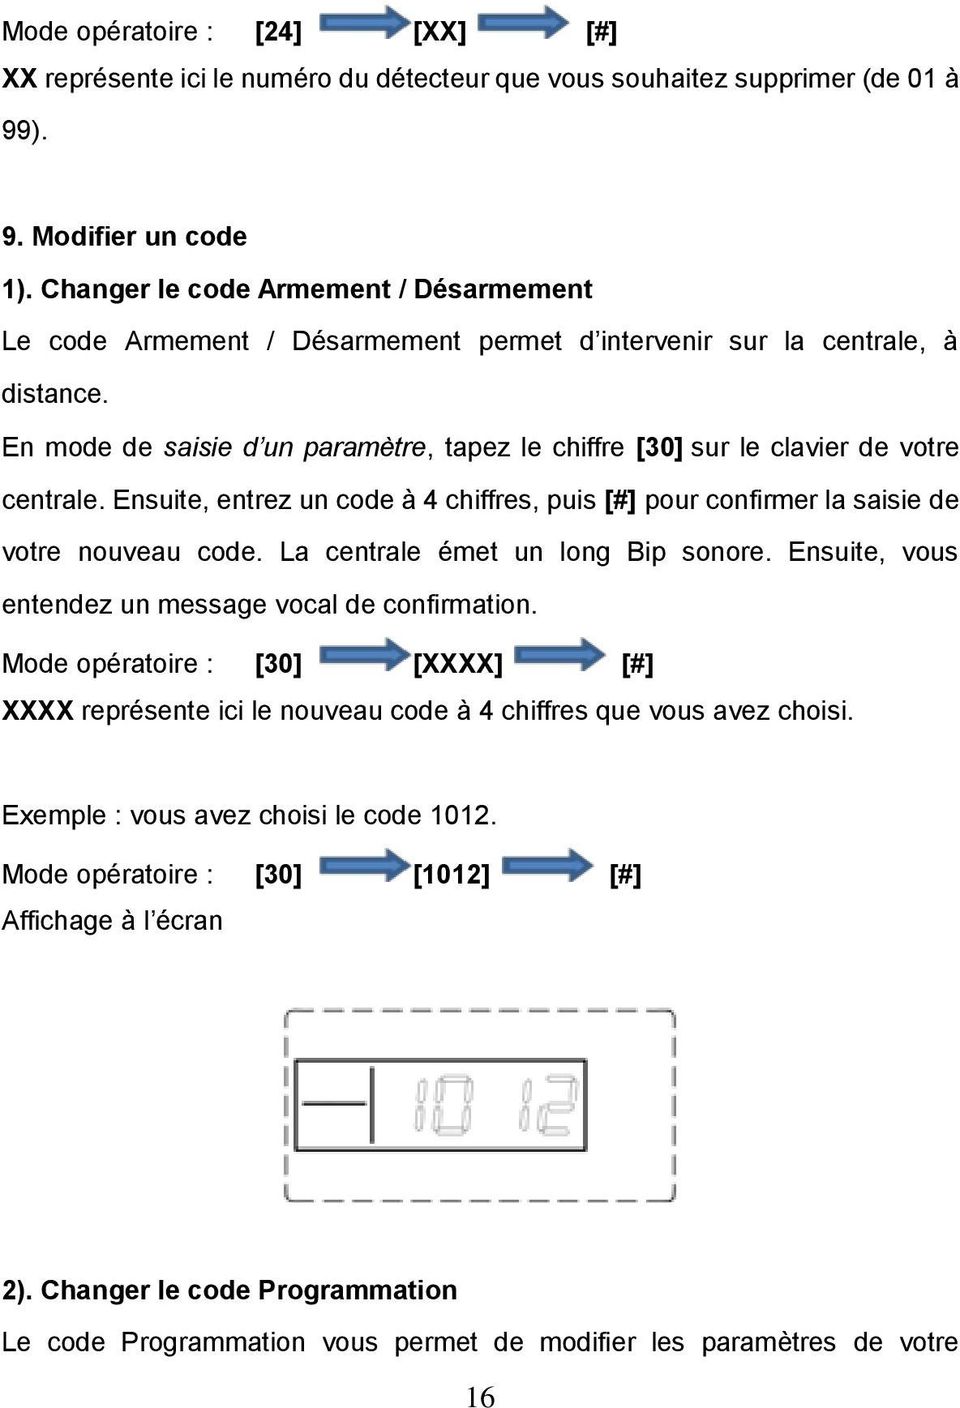 En mode de saisie d un paramètre, tapez le chiffre [30] sur le clavier de votre centrale. Ensuite, entrez un code à 4 chiffres, puis [#] pour confirmer la saisie de votre nouveau code.